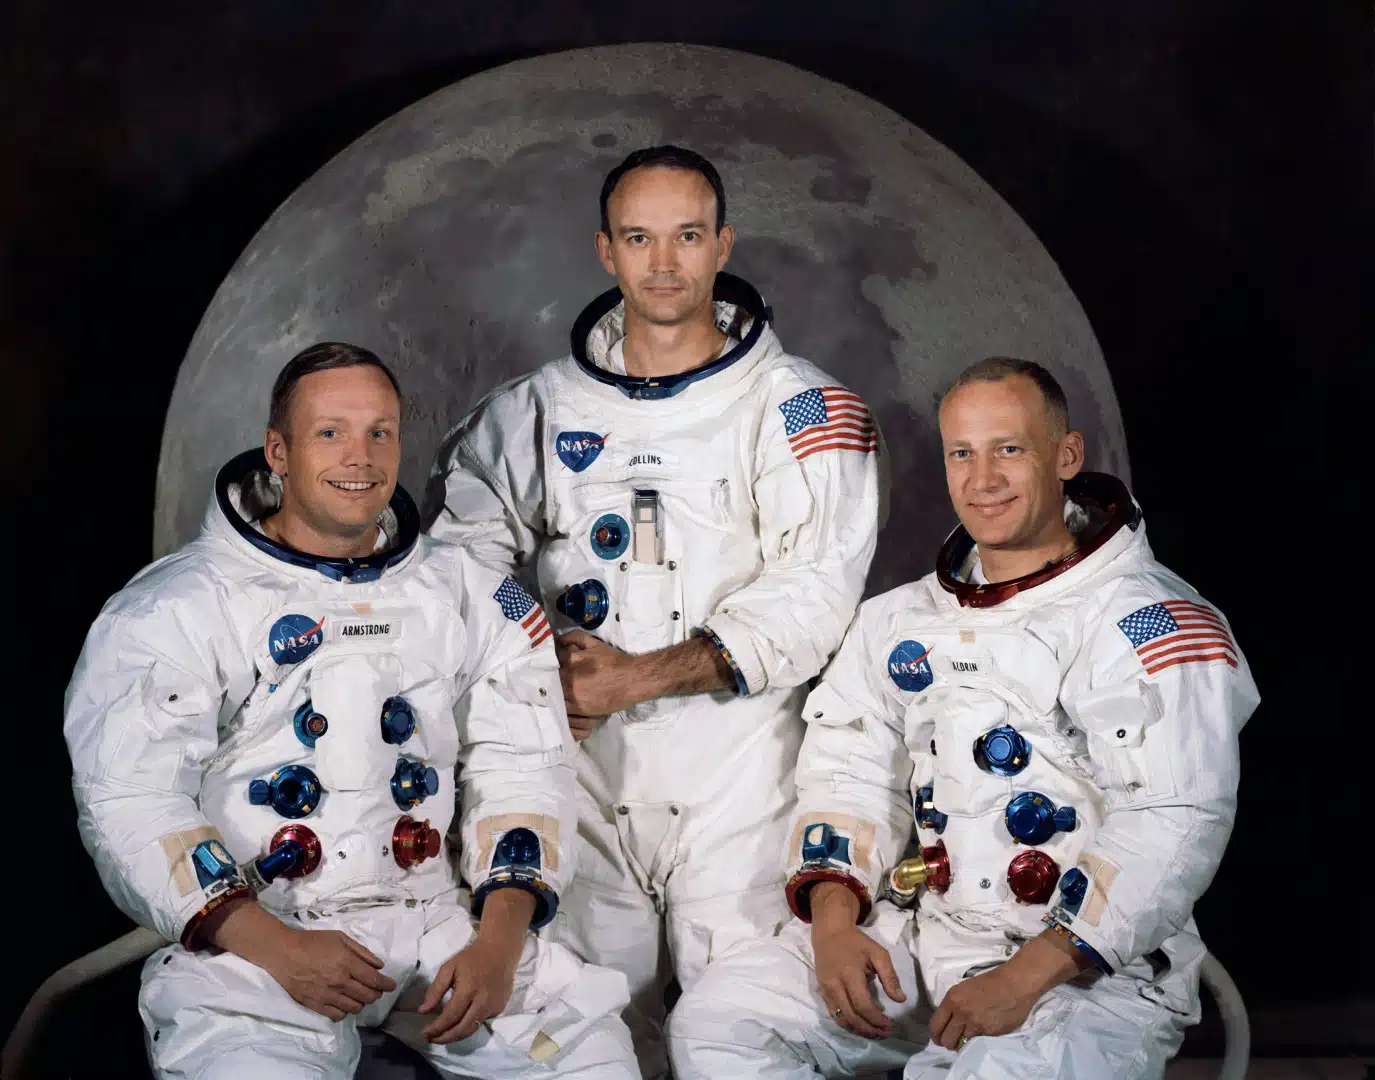 Posada misije Apollo 11: Armstrong, Collins, Aldrin